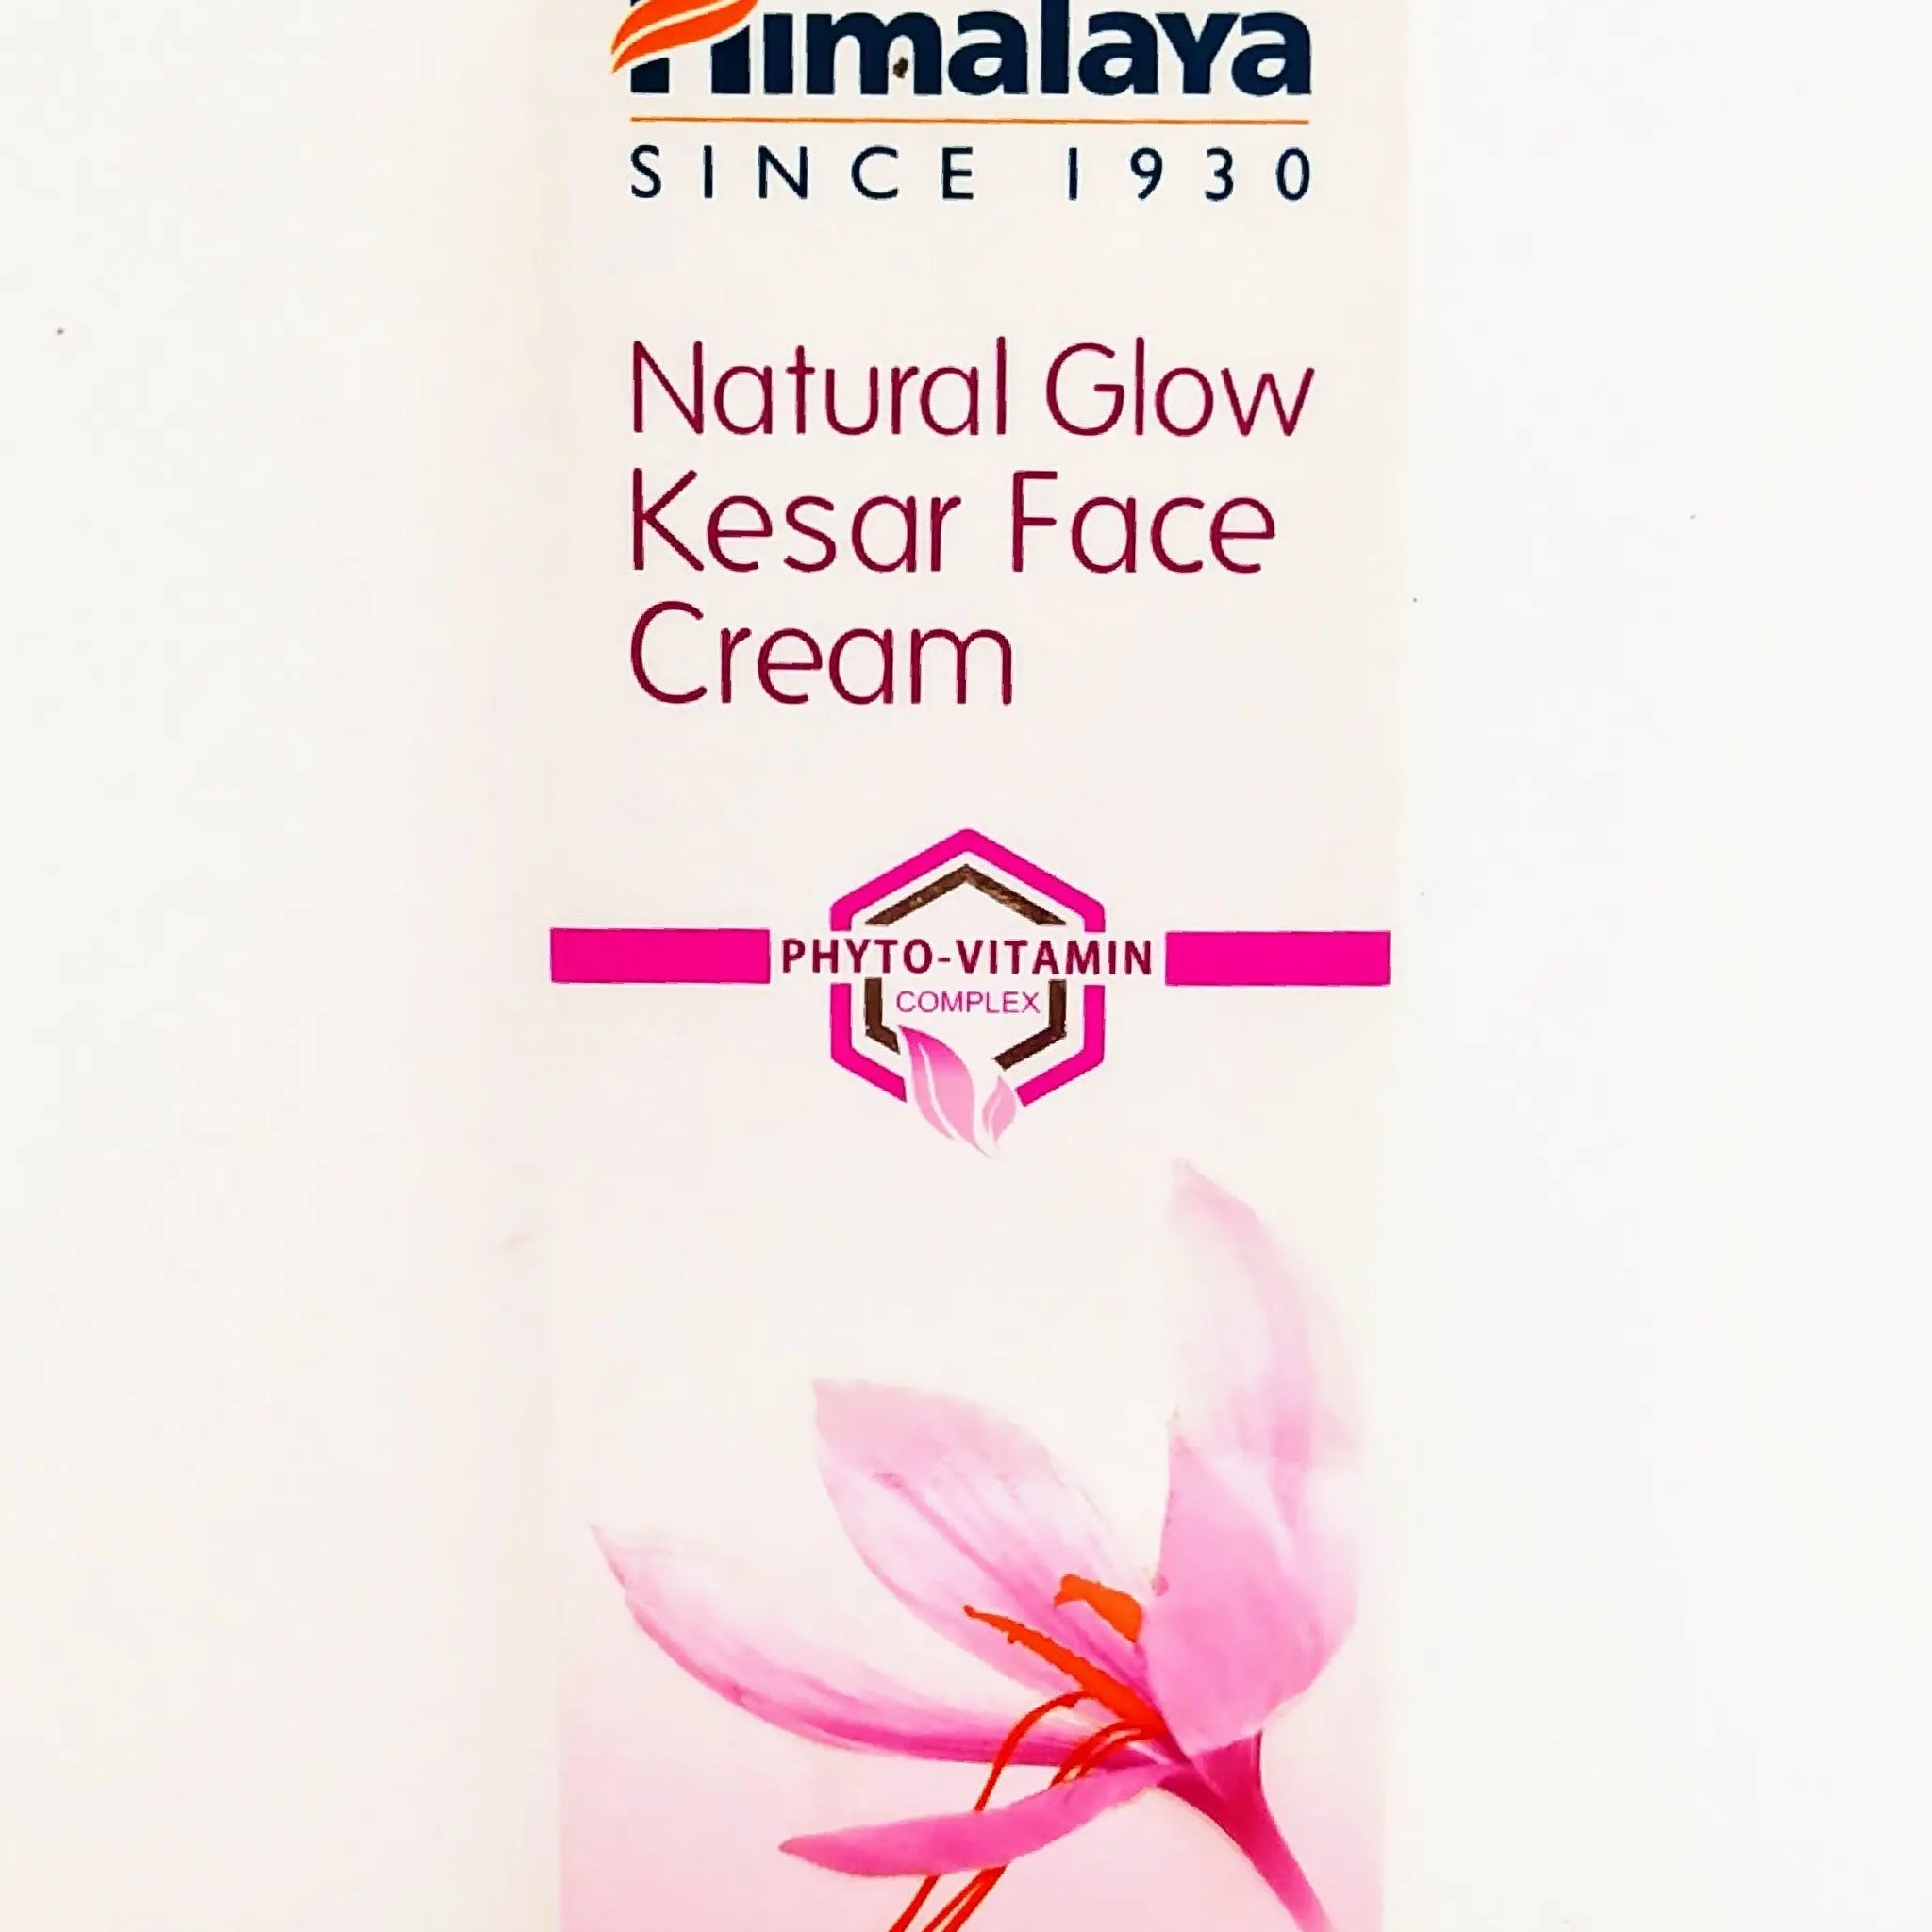 Himalaya nature glow kesar face cream Himalaya